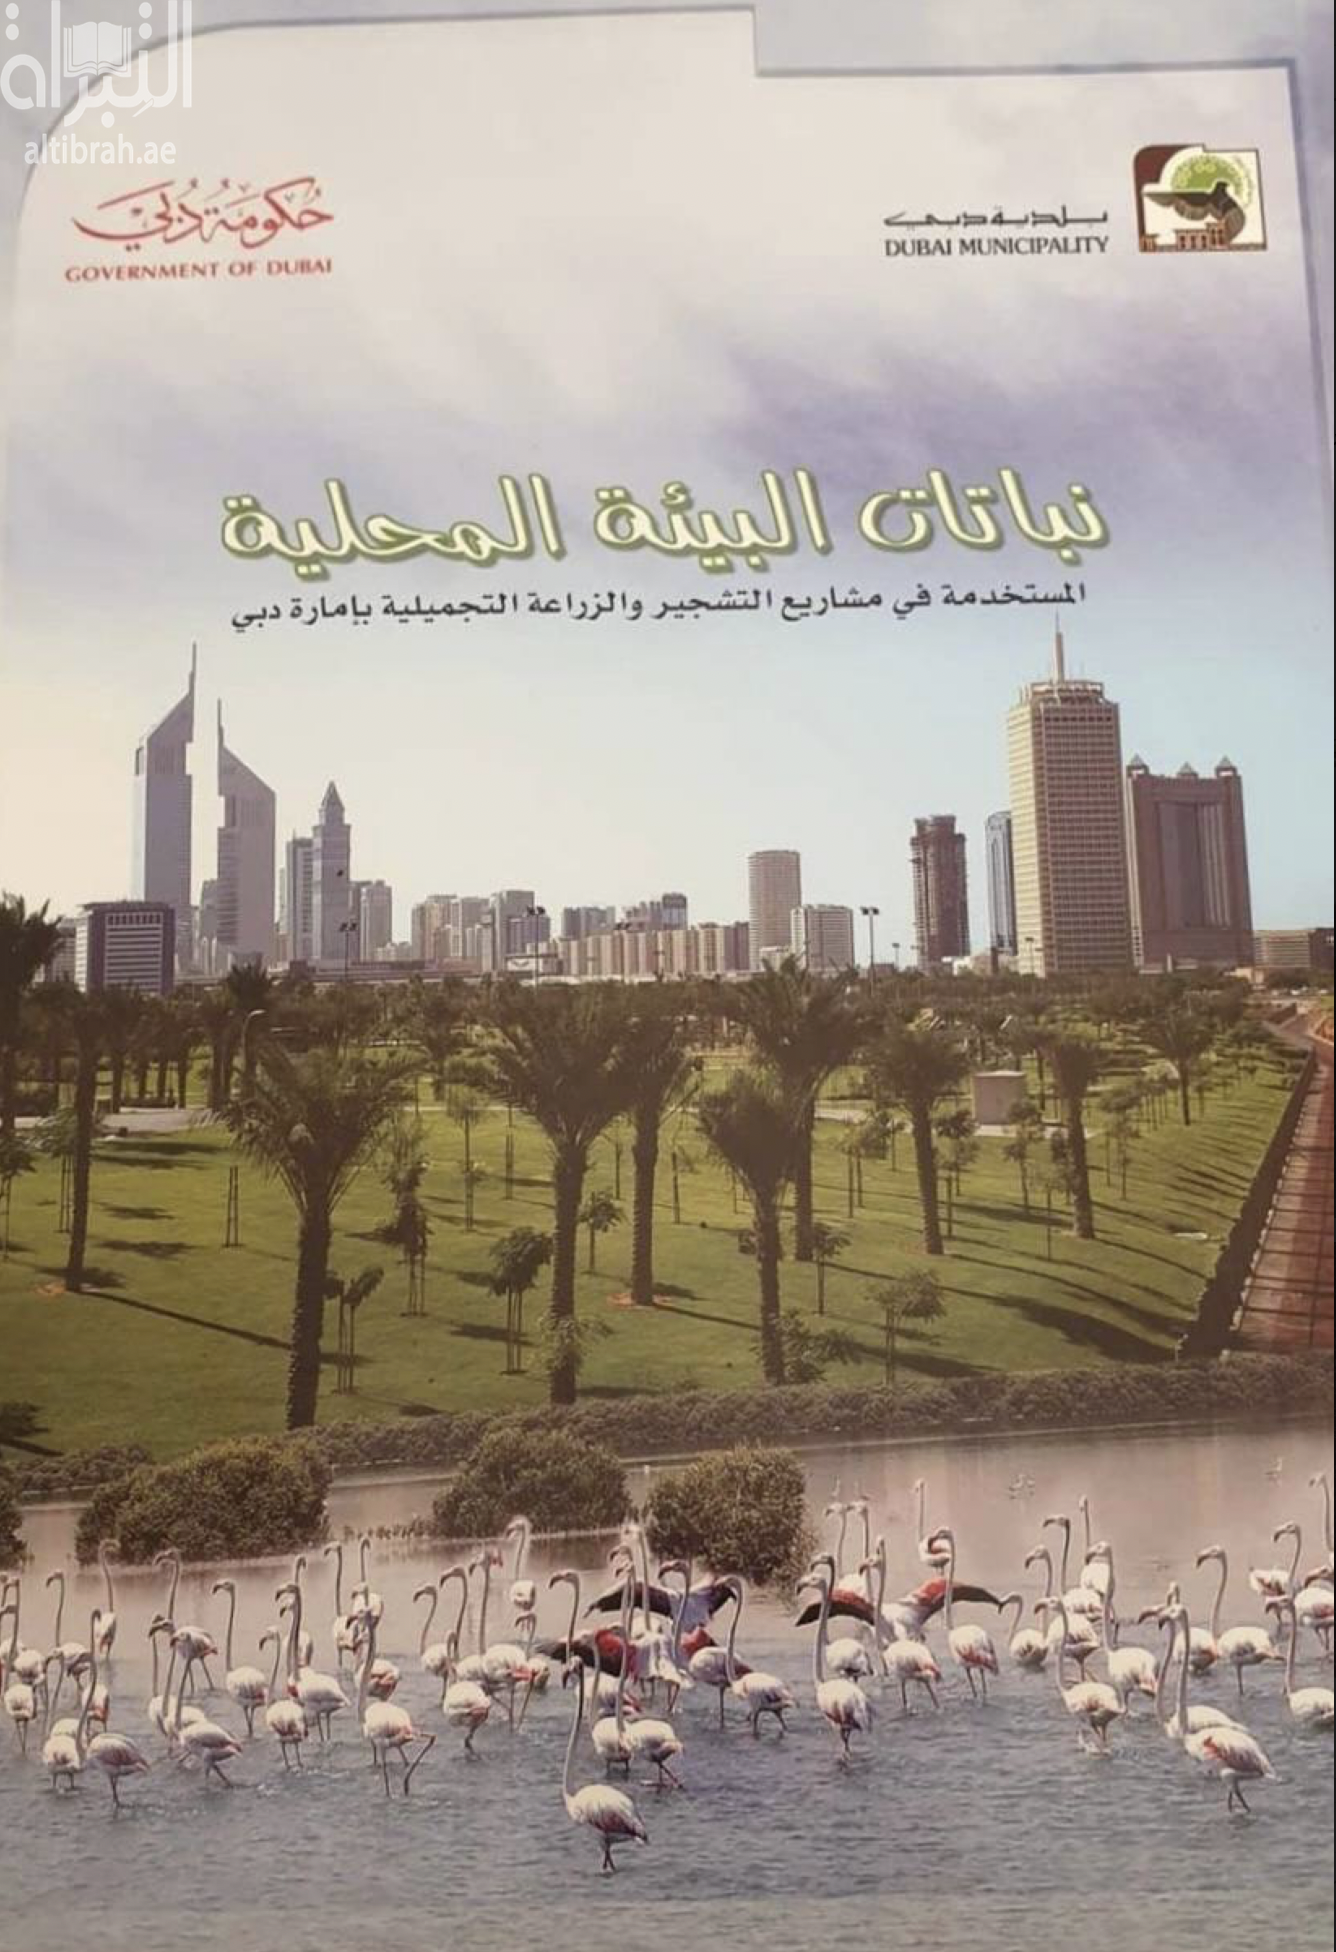 كتاب نباتات البيئة المحلية المستخدمة في مشاريع التشجير والزراعة التجميلية بإمارة دبي